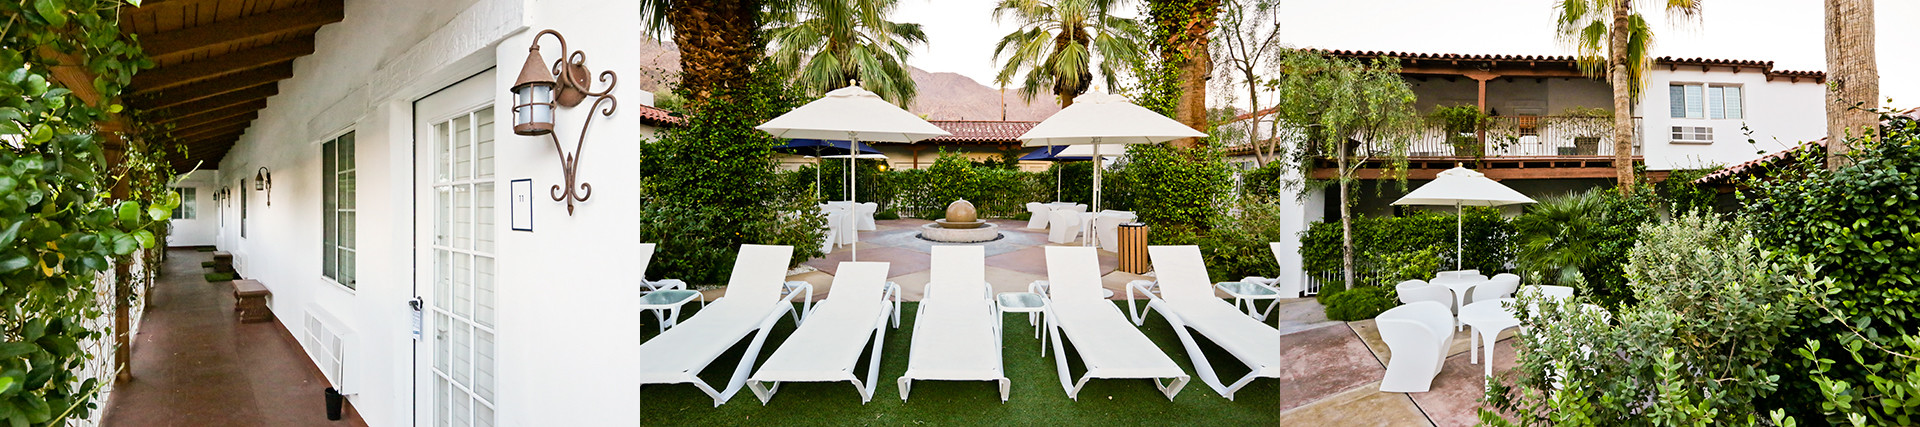 Alcazar Hotel Palm Springs 1